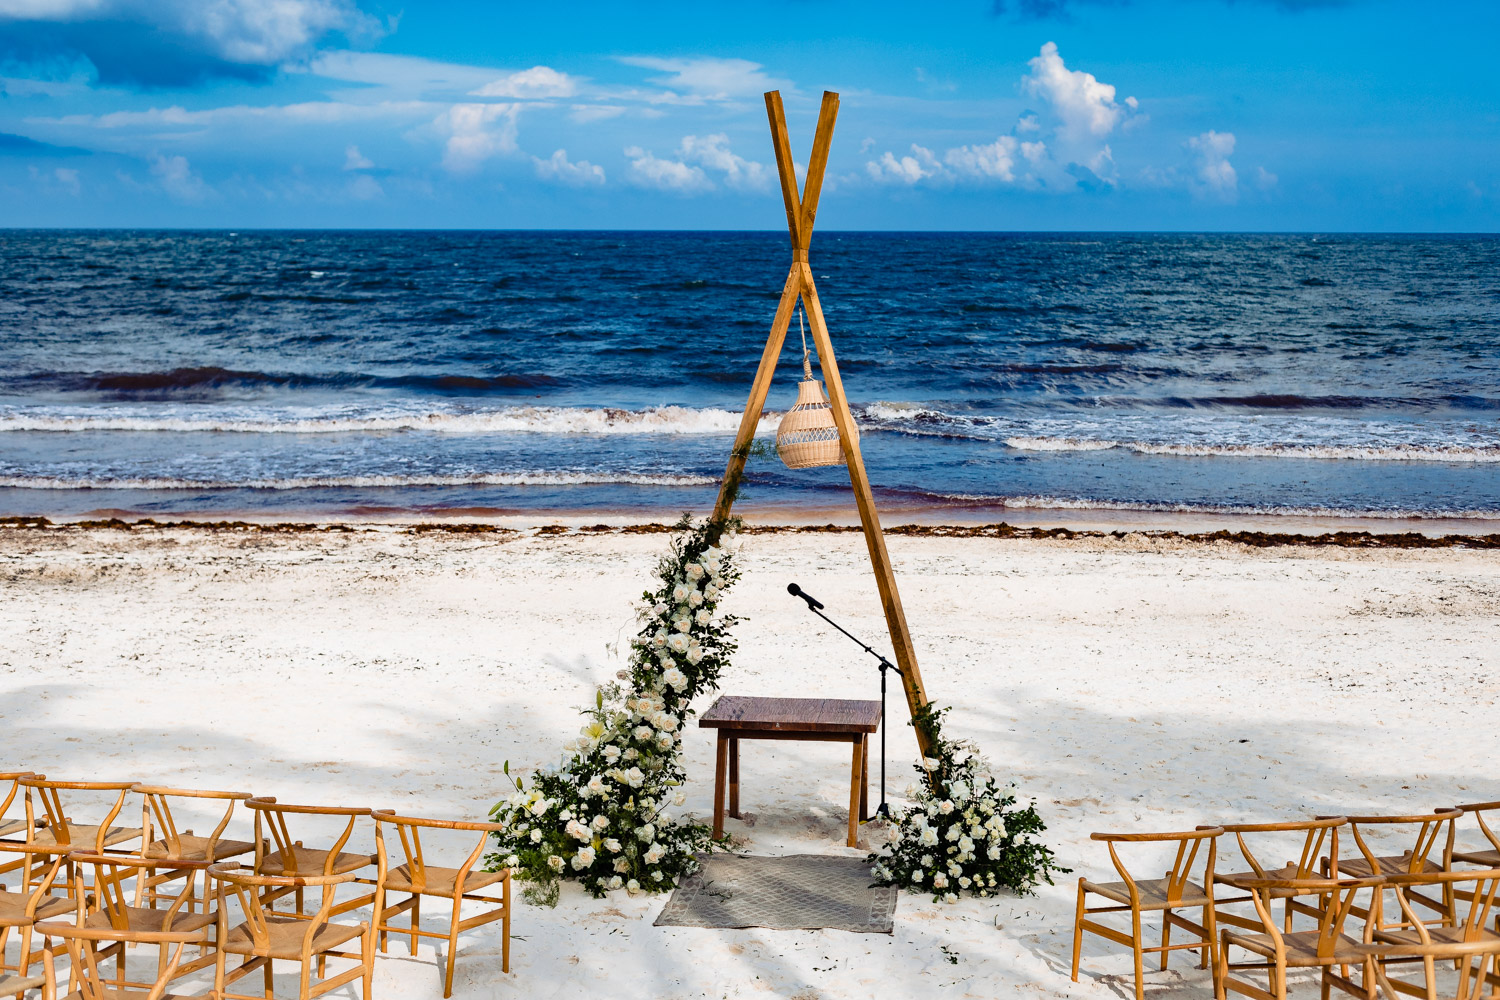 Wedding decorations at the Riviera Maya